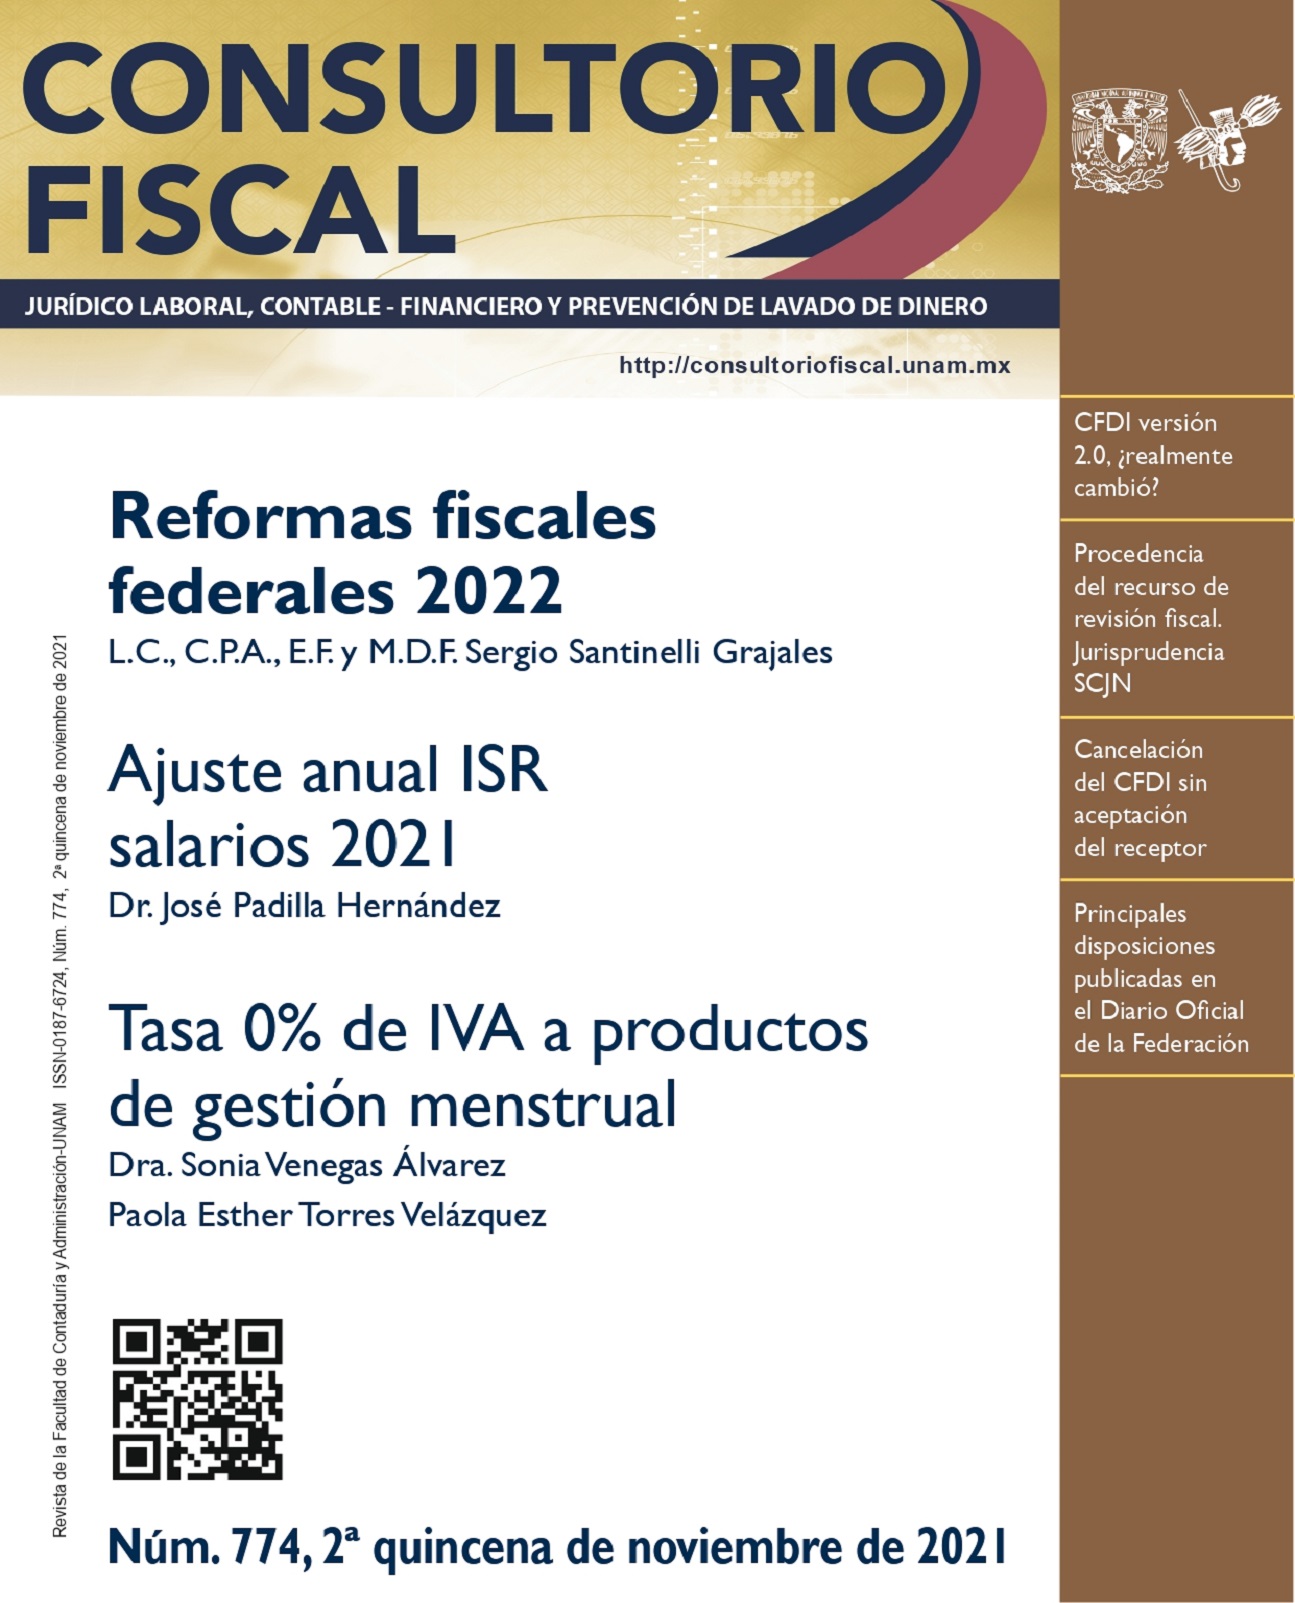 Reformas fiscales federales 2022